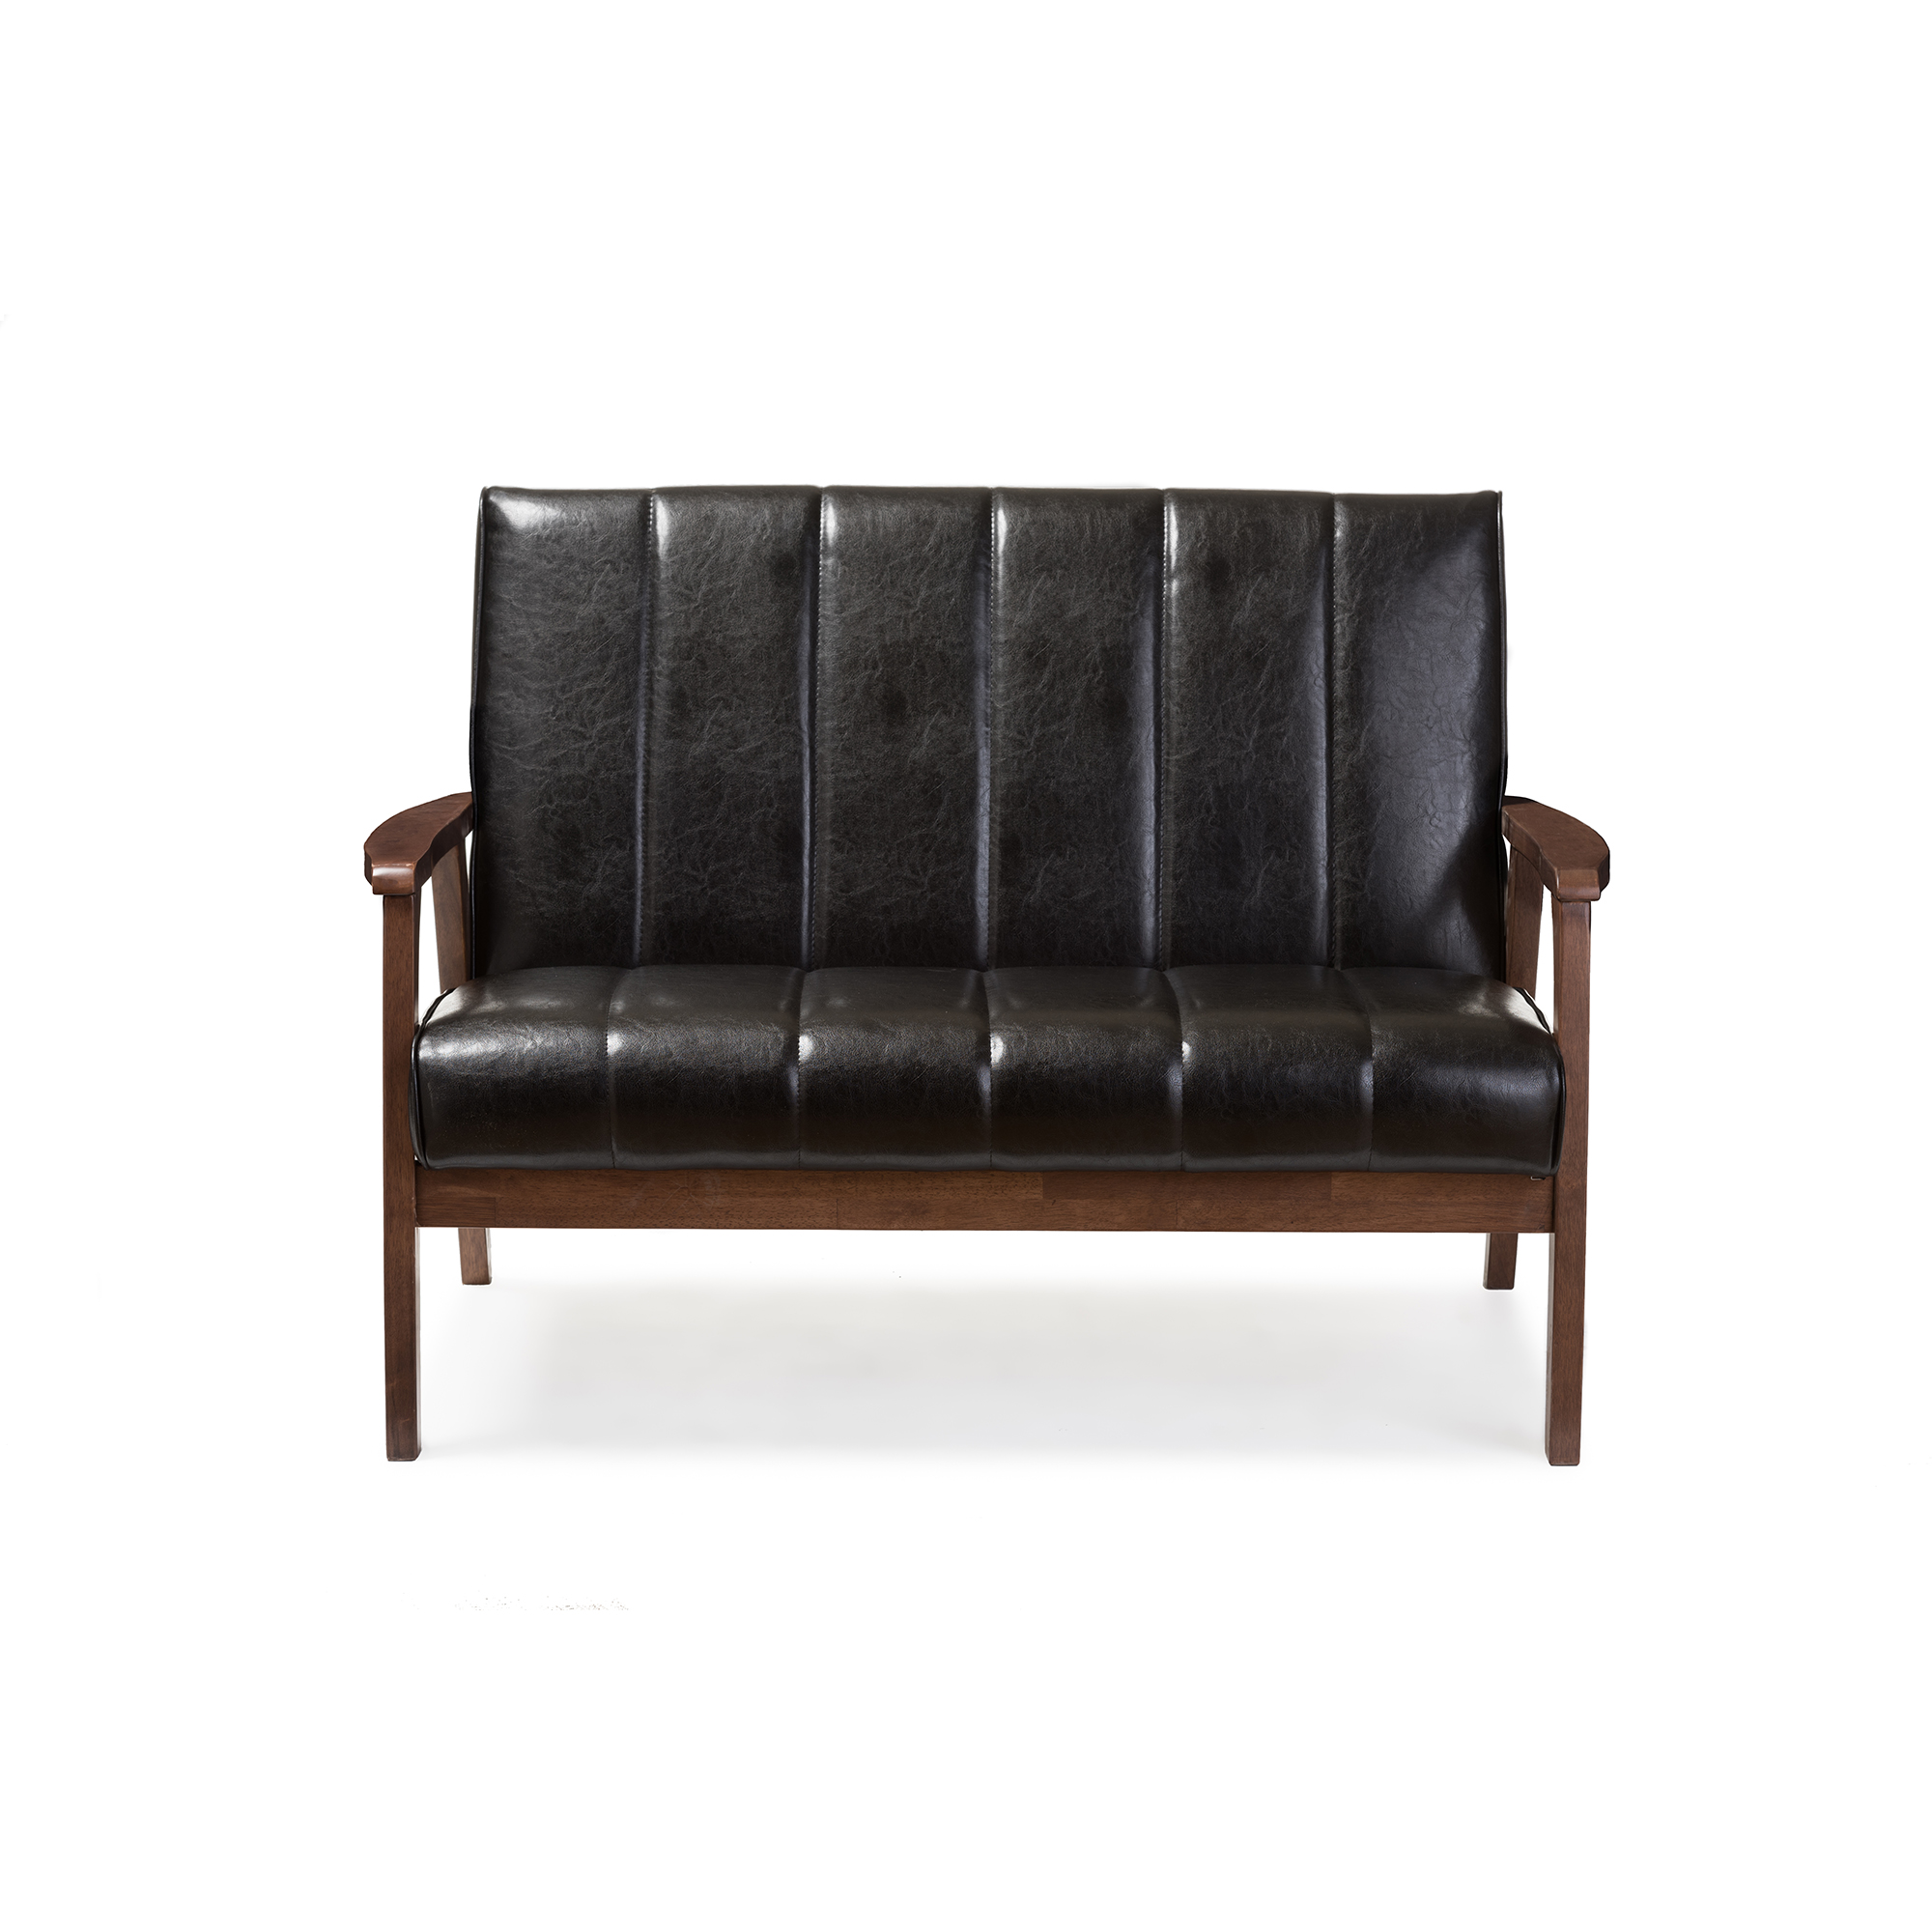 Baxton Studio Nikko Mid-century Modern Scandinavian Style Black Faux Leather Wooden 2-Seater Loveseat